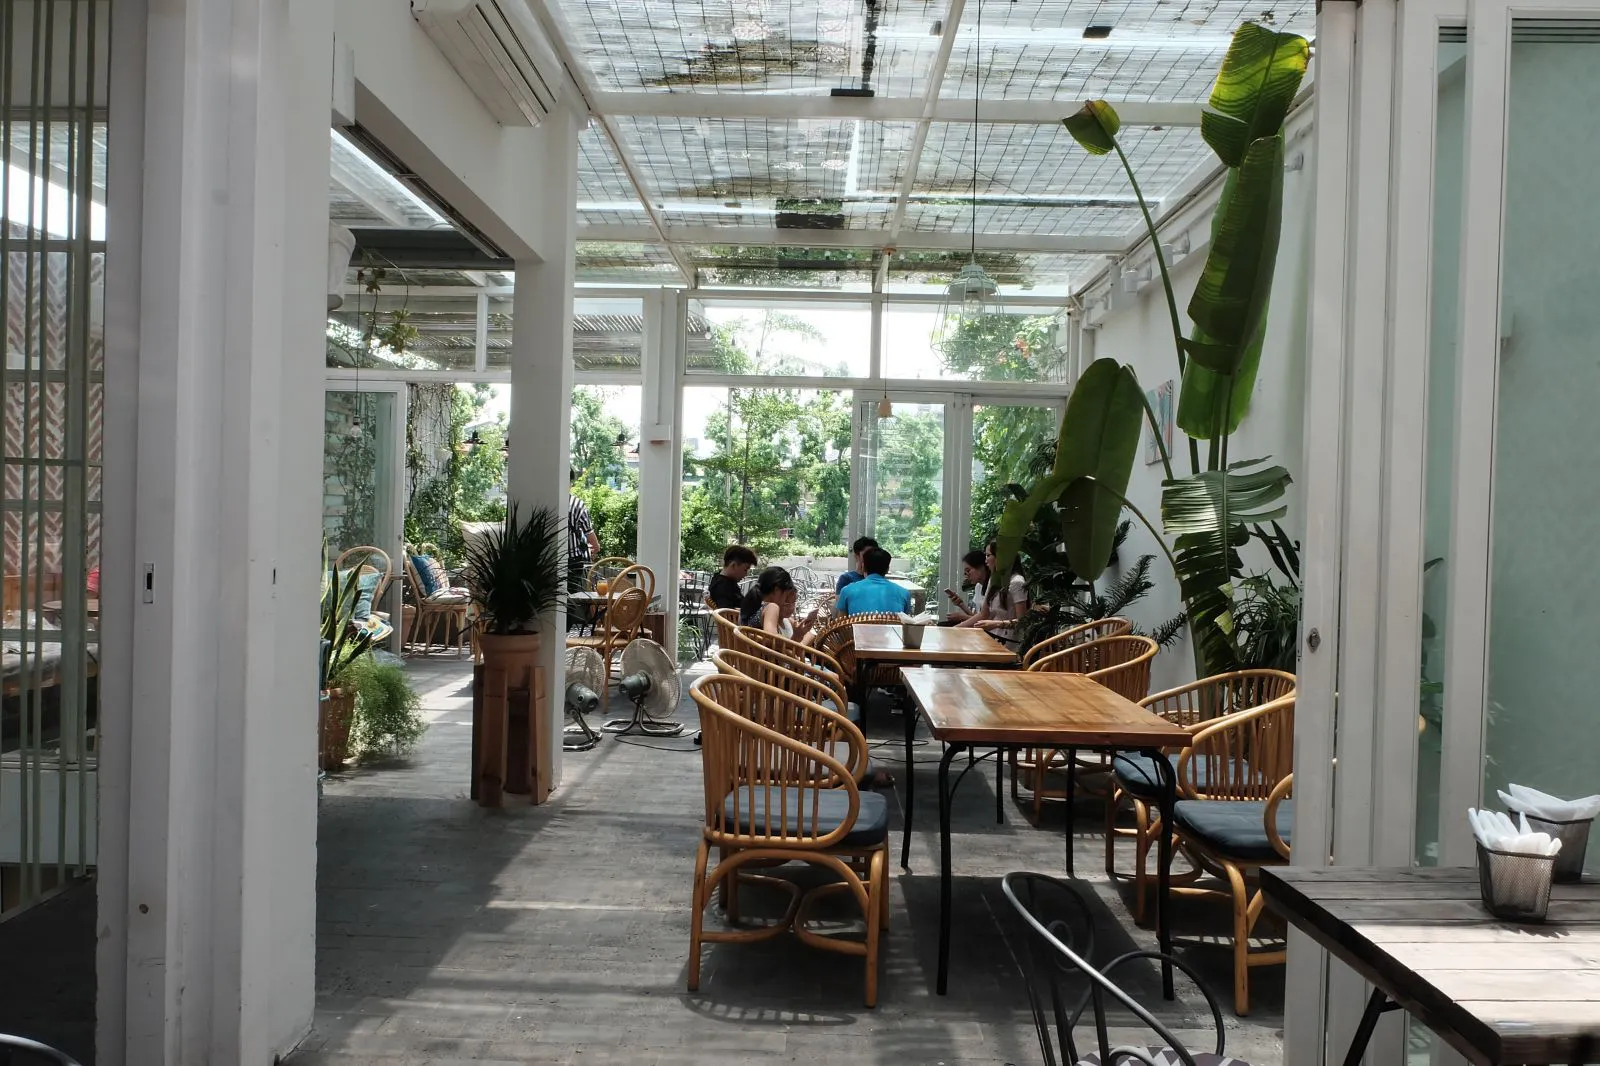 Nằm ở địa chỉ số 317 Nguyễnp/Khang (Cầu Giấy, Hà Nội), Cup of Tea Café là một điểm đến yêu thích của các bạn trẻ mê check - in.